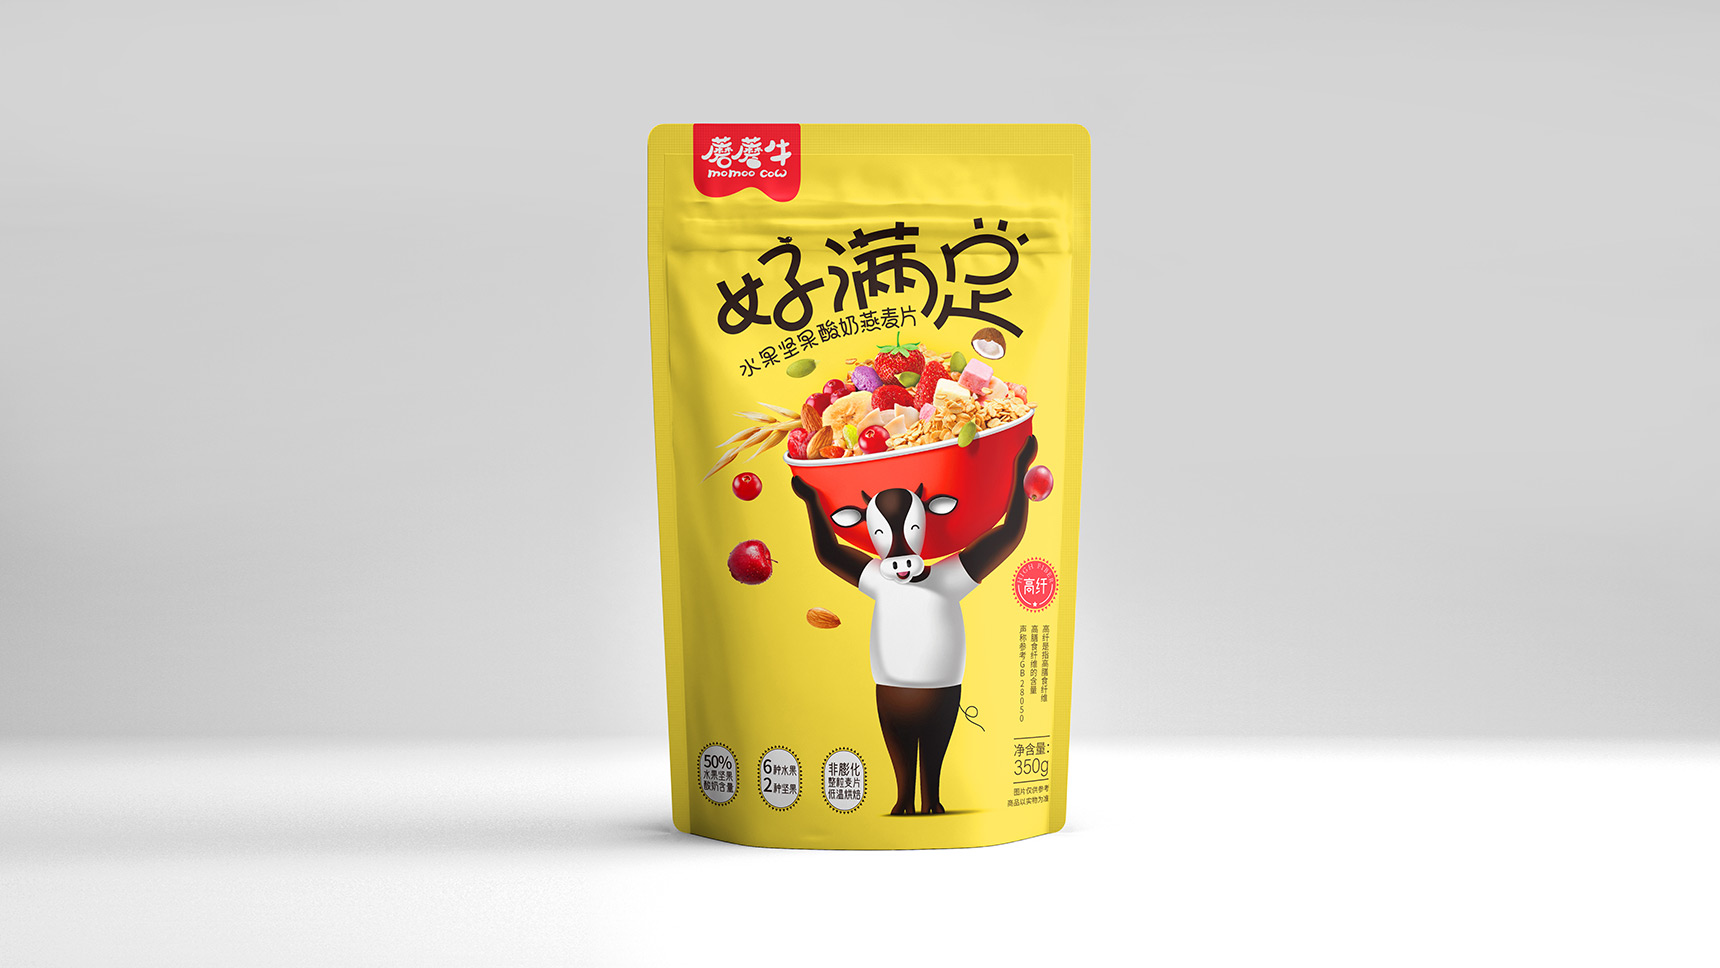 广州食品包装设计公司